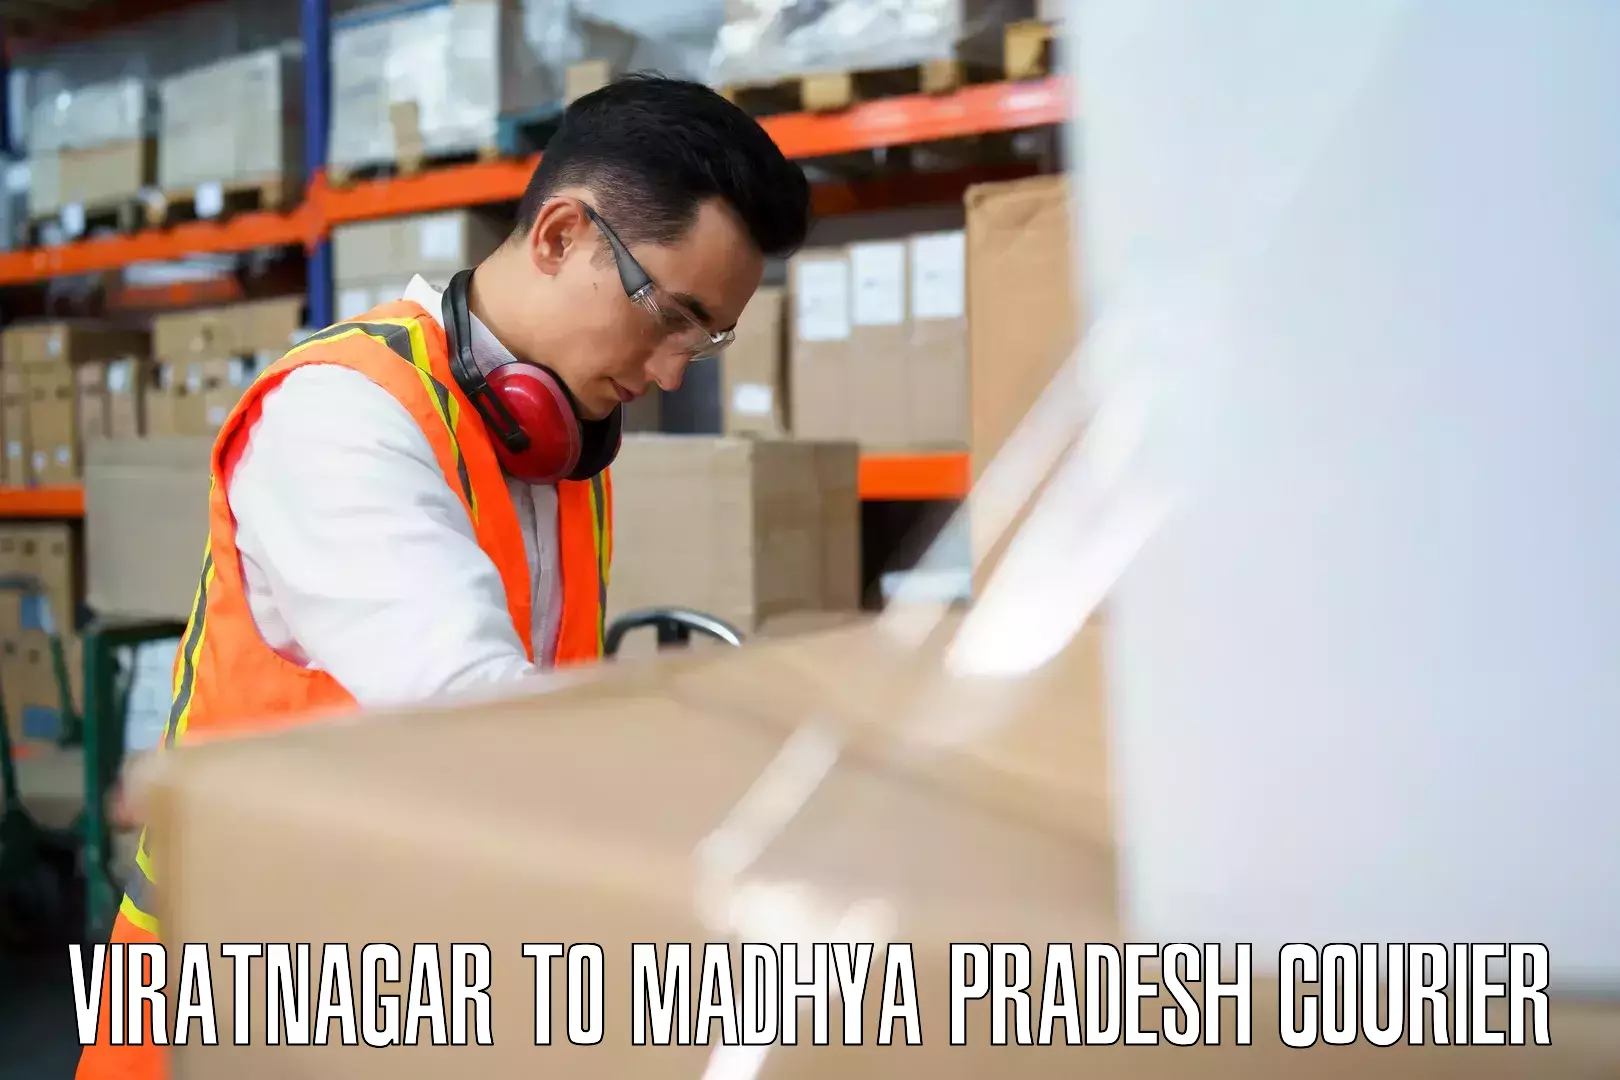 Luggage dispatch service Viratnagar to Kotma